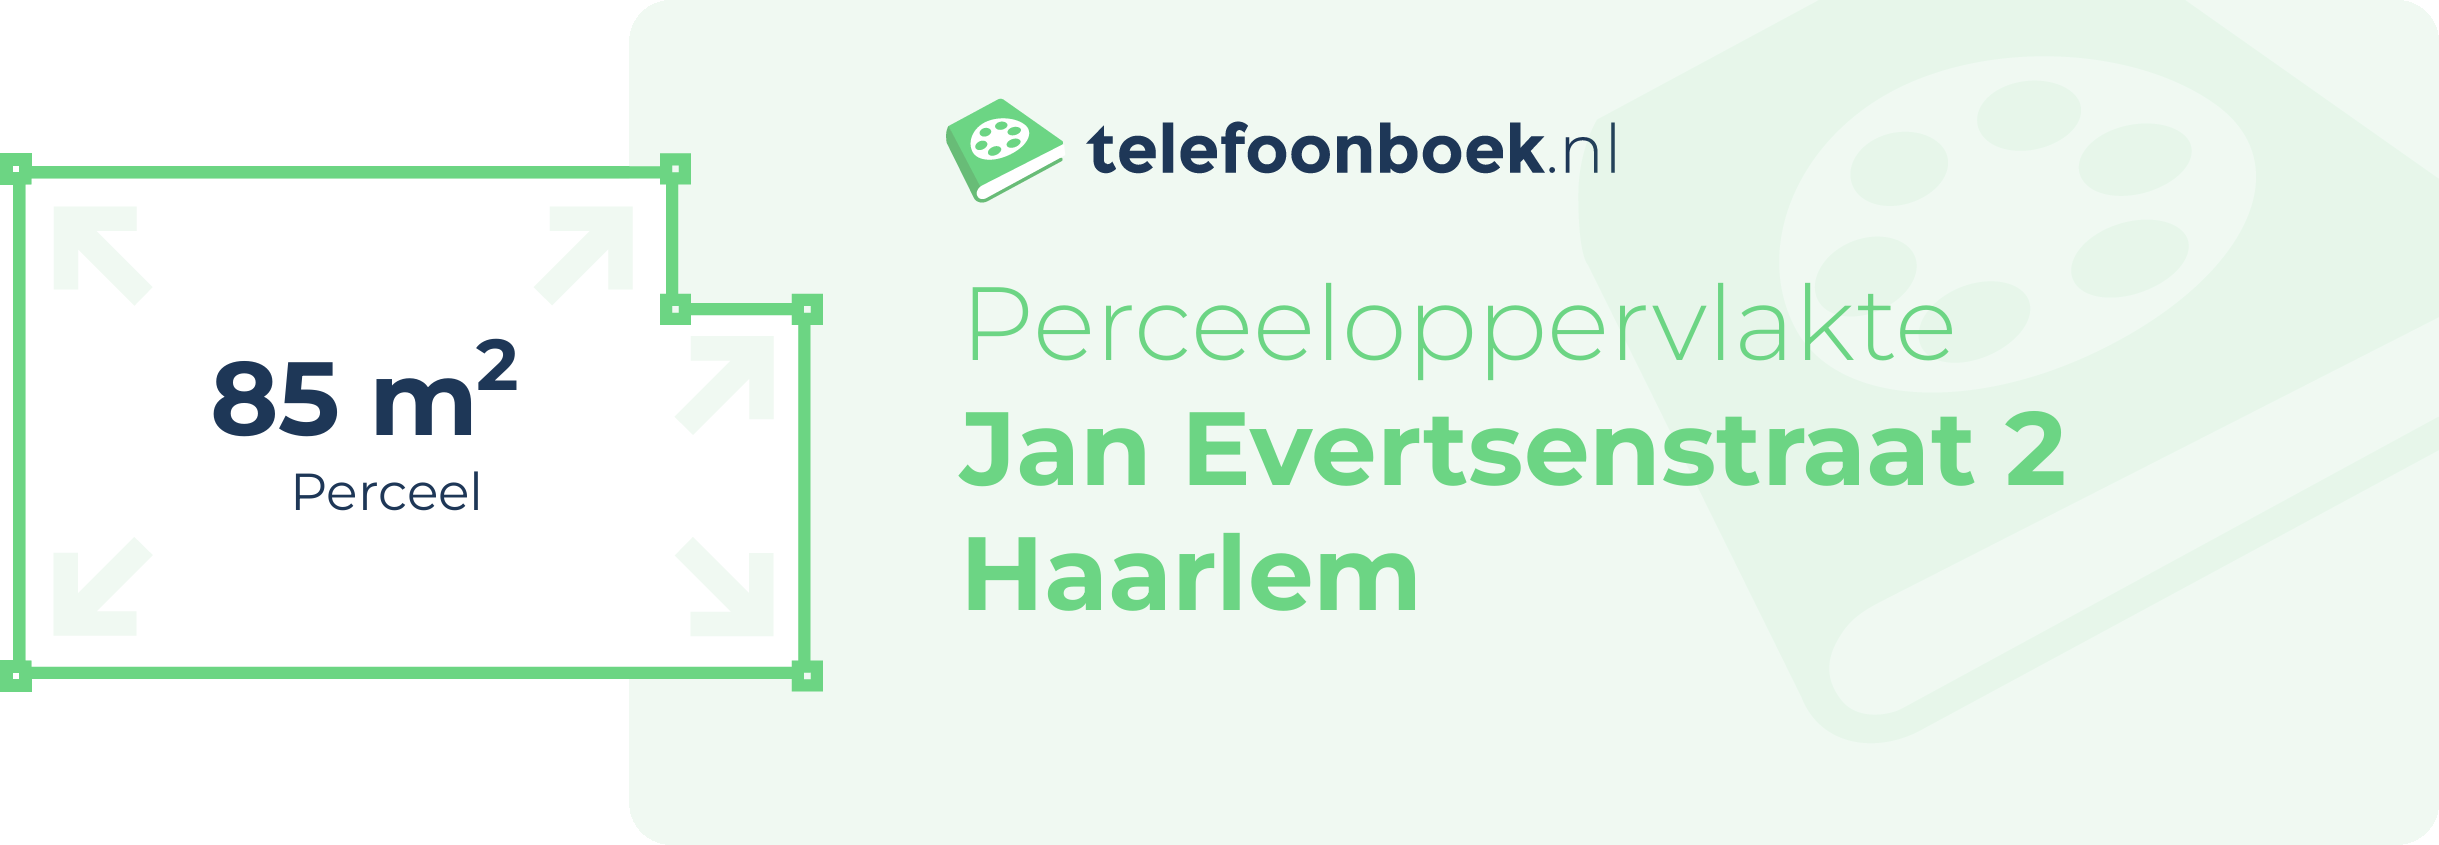 Perceeloppervlakte Jan Evertsenstraat 2 Haarlem